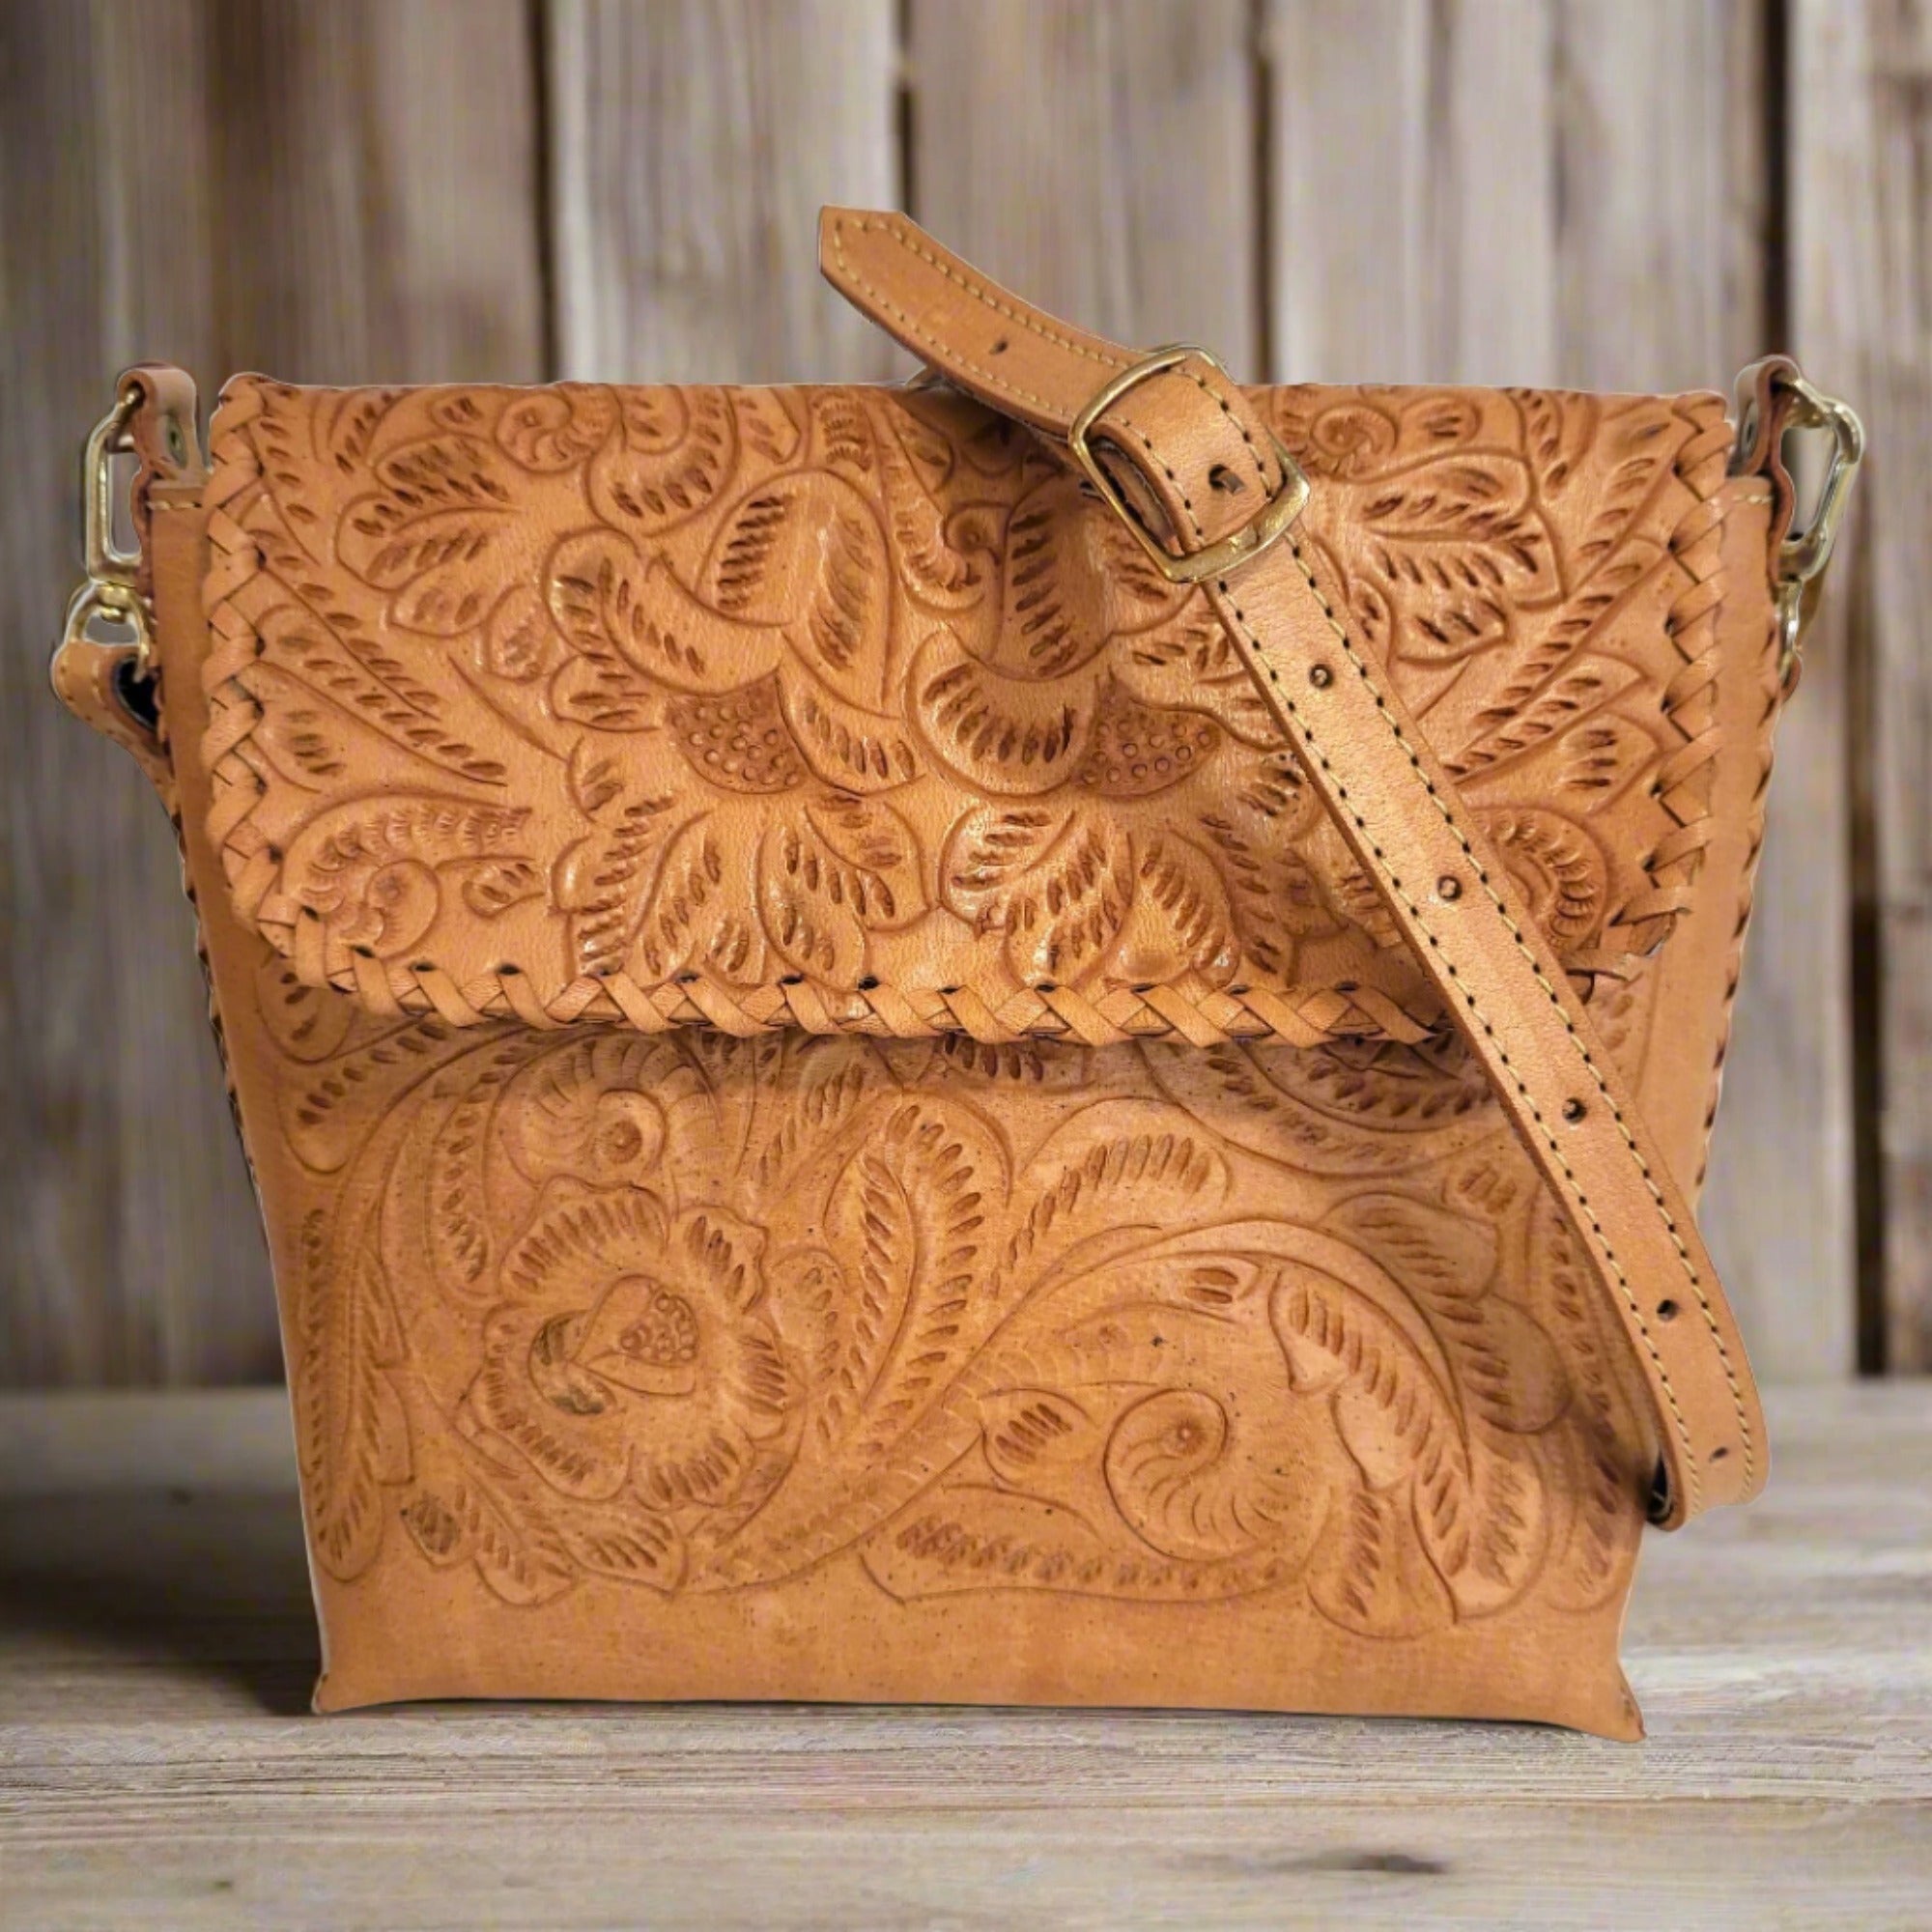 Hand tooled leather bag for women, shoulder leather bag, handmade handbag